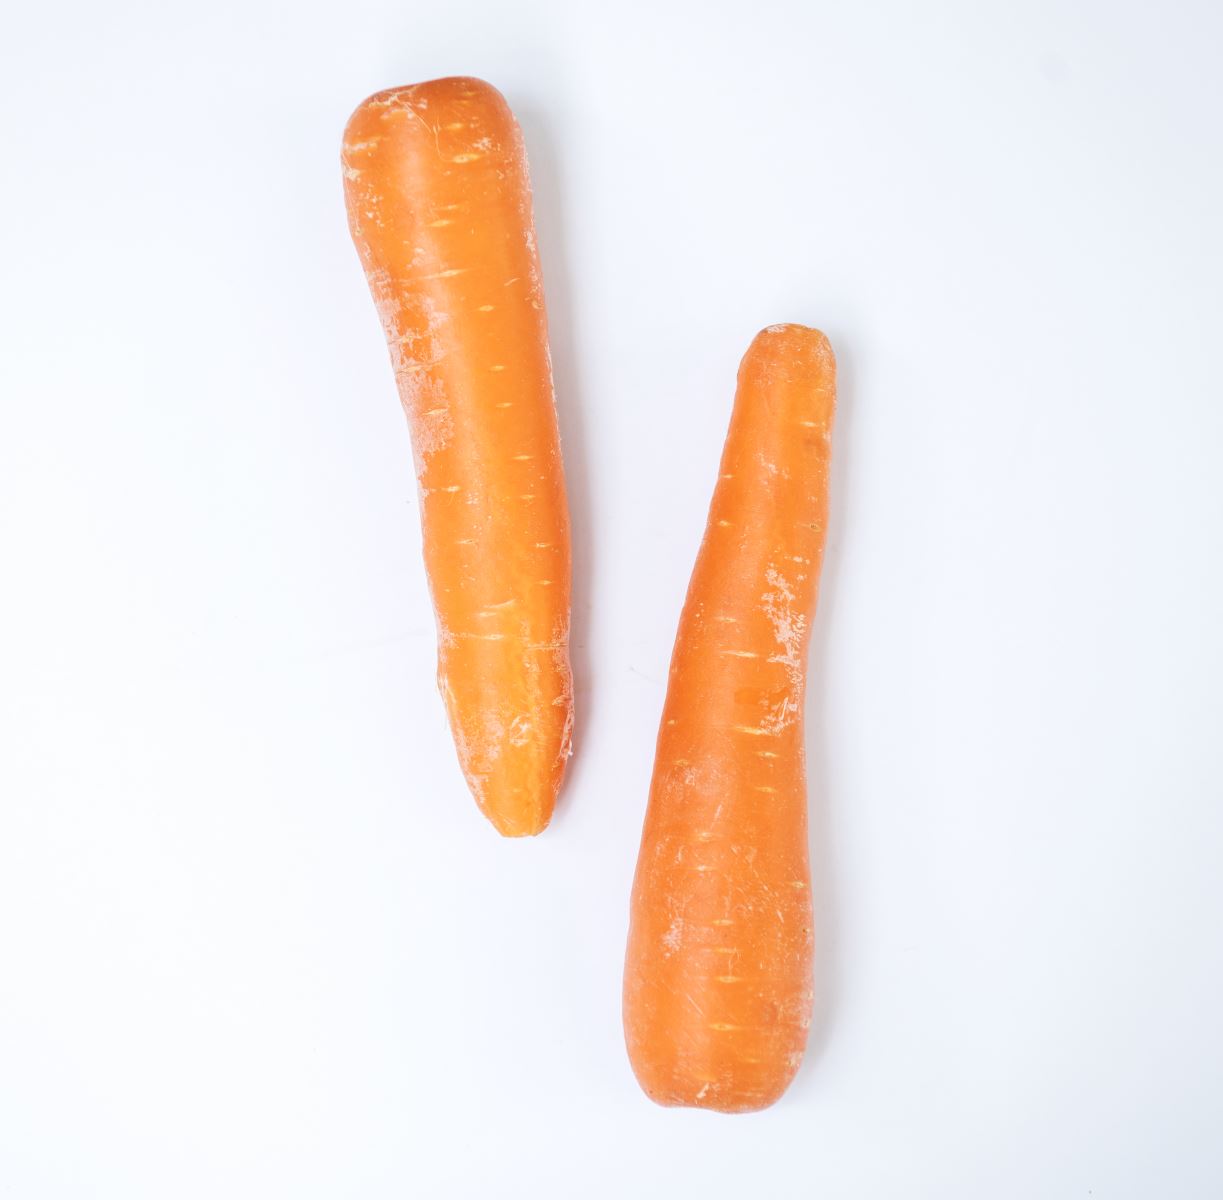 Củ cải đỏ trong canh dưỡng sinh